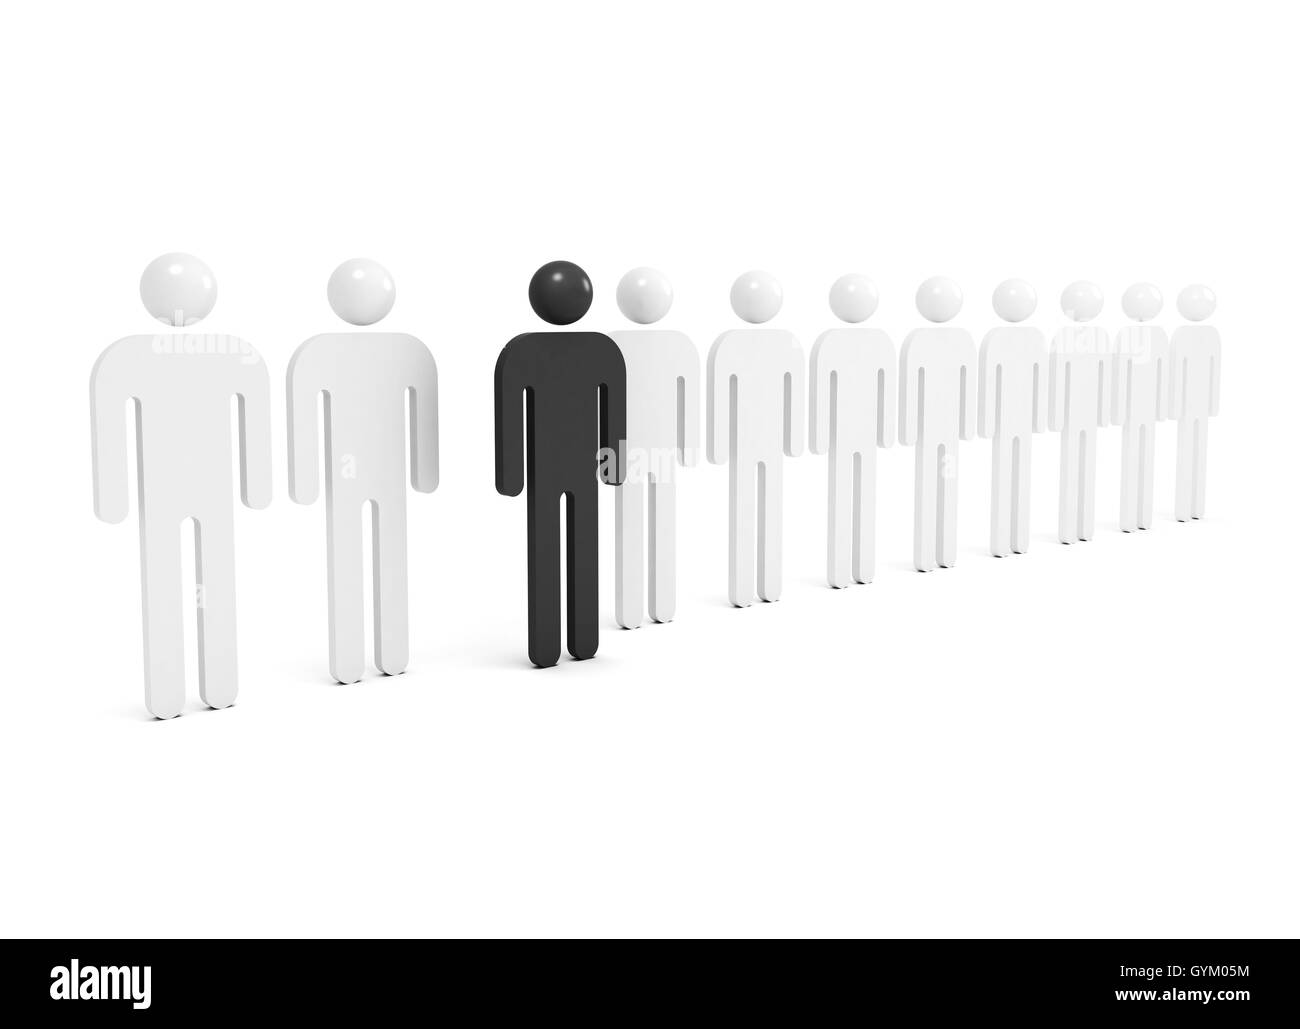 Fila de gente blanca abstractos con uno negro figura destacada, ilustración 3d Foto de stock